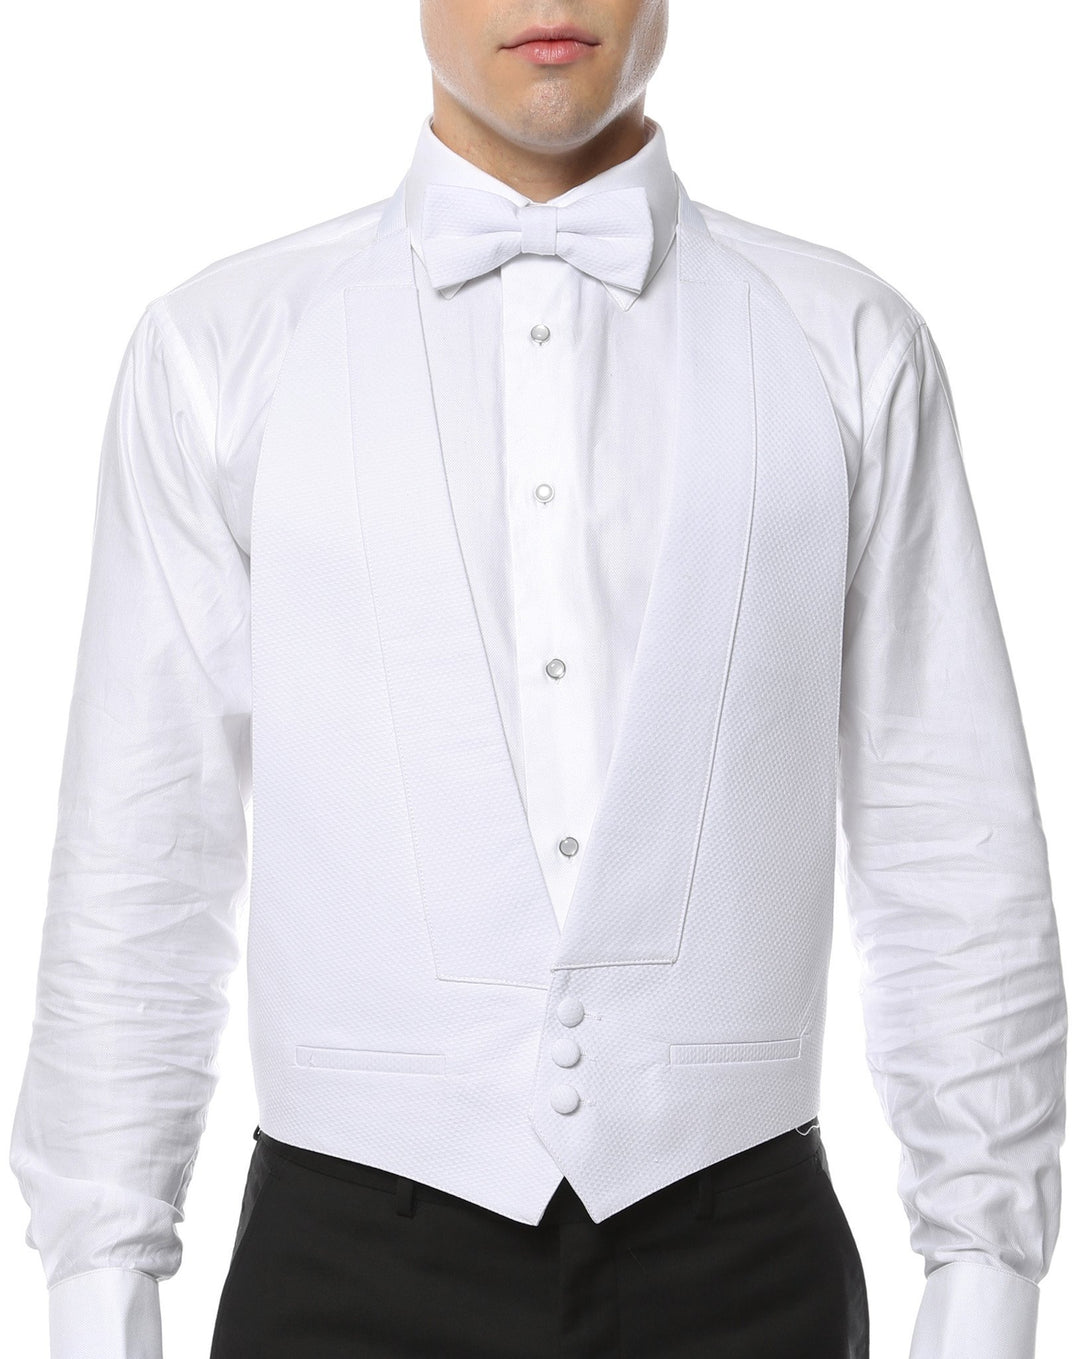 Premium White Pique 100% Cotton Backless Tuxedo Vest & Bow Tie / 2XL FIT ALL (50-60) - New York Man Suits